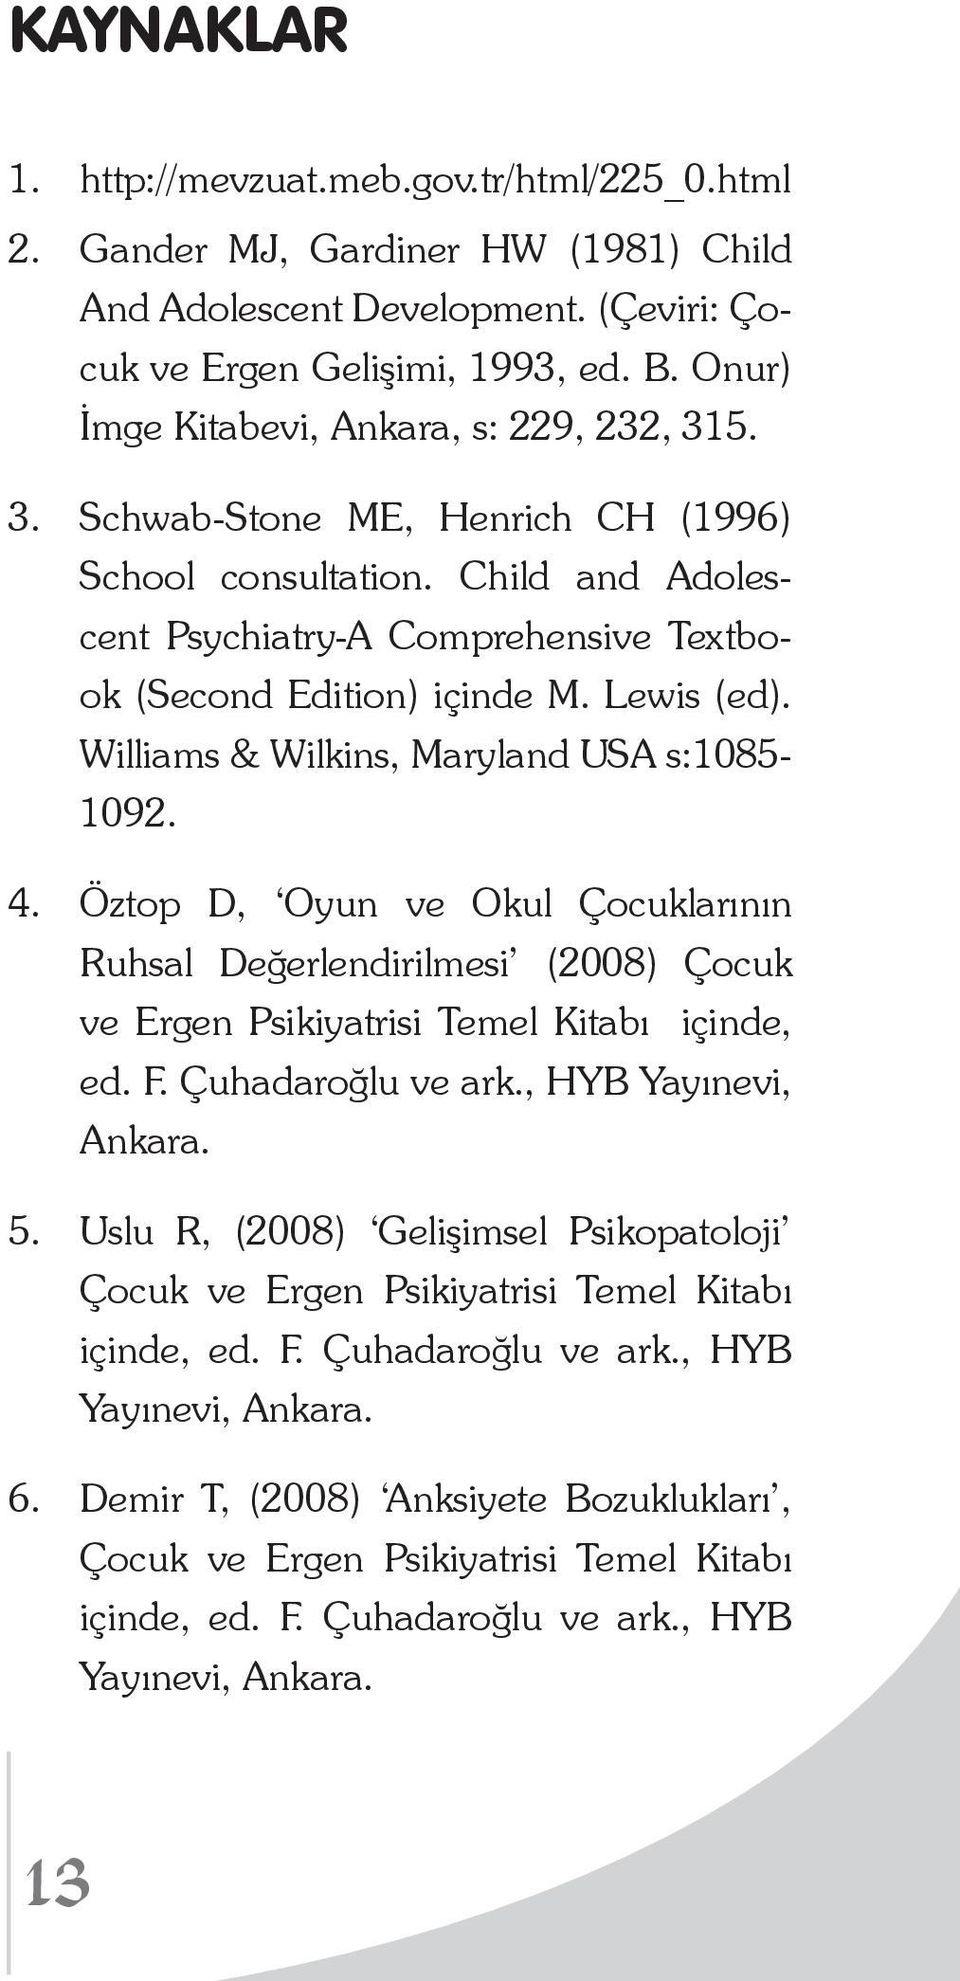 Lewis (ed). Williams & Wilkins, Maryland USA s:1085-1092. 4. Öztop D, Oyun ve Okul Çocuklarının Ruhsal Değerlendirilmesi (2008) Çocuk ve Ergen Psikiyatrisi Temel Kitabı içinde, ed. F.